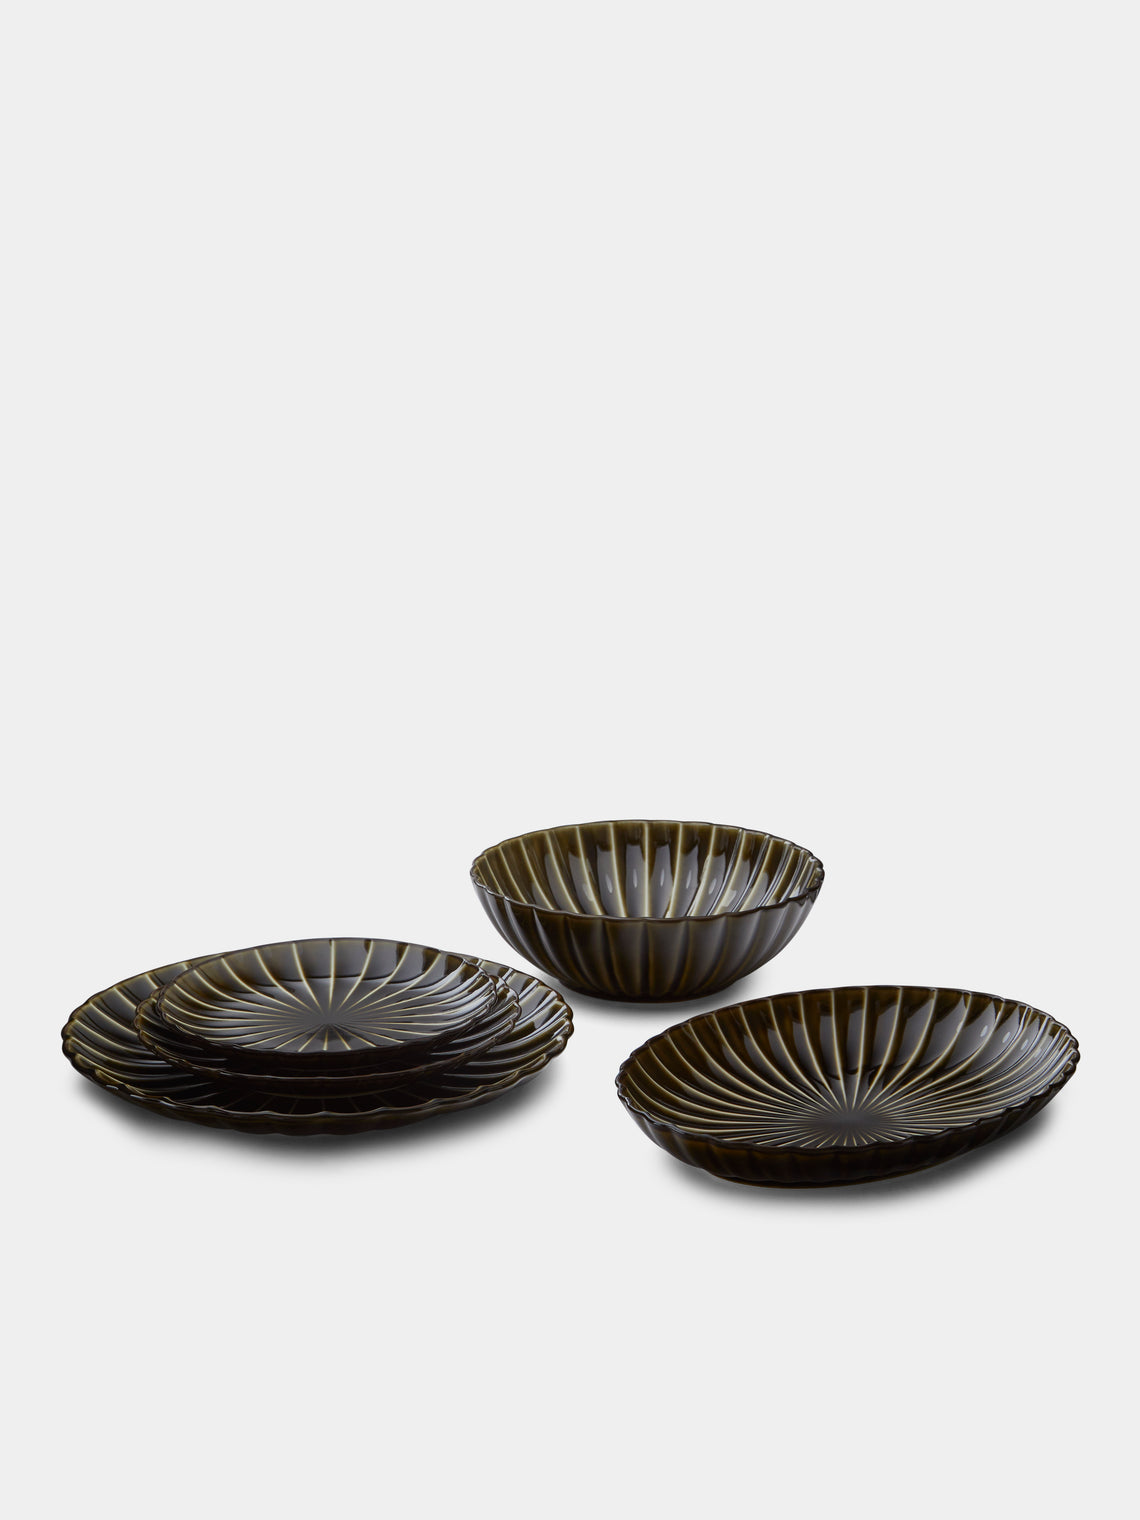 Kaneko Kohyo - Giyaman Urushi Ceramic Dessert Plates (Set of 4) -  - ABASK